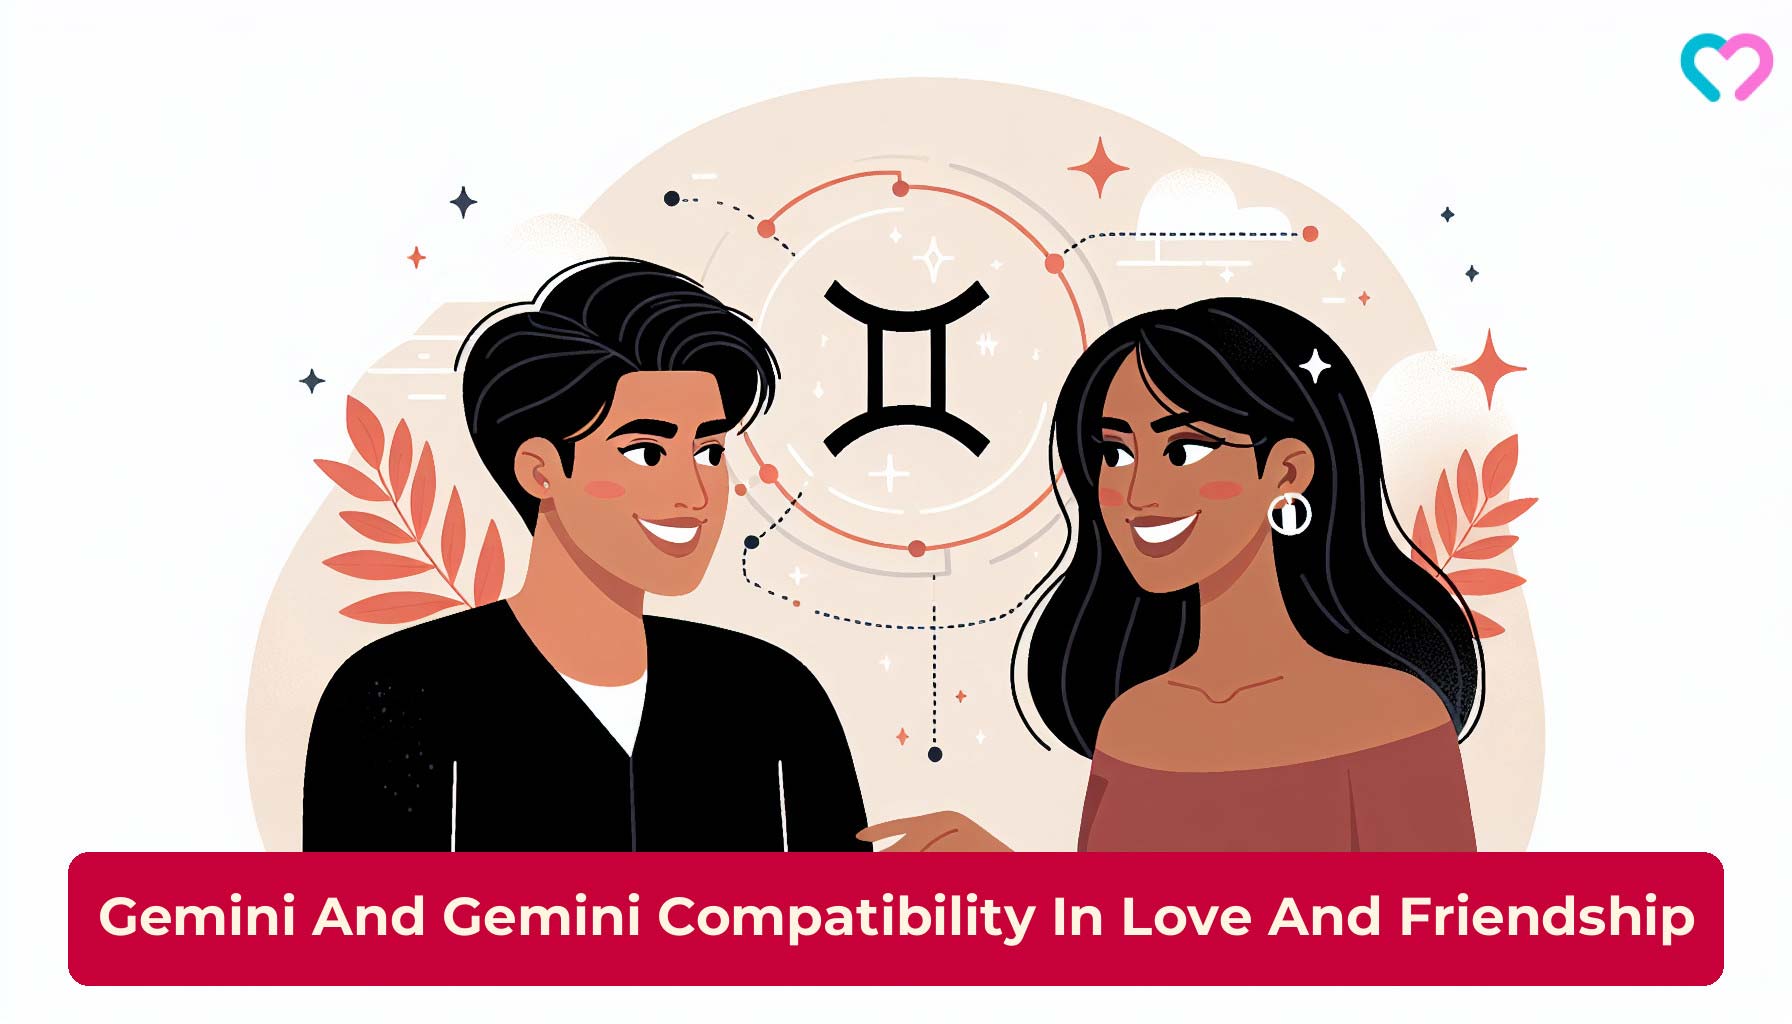 Gemini and gemini compatibility_illustration